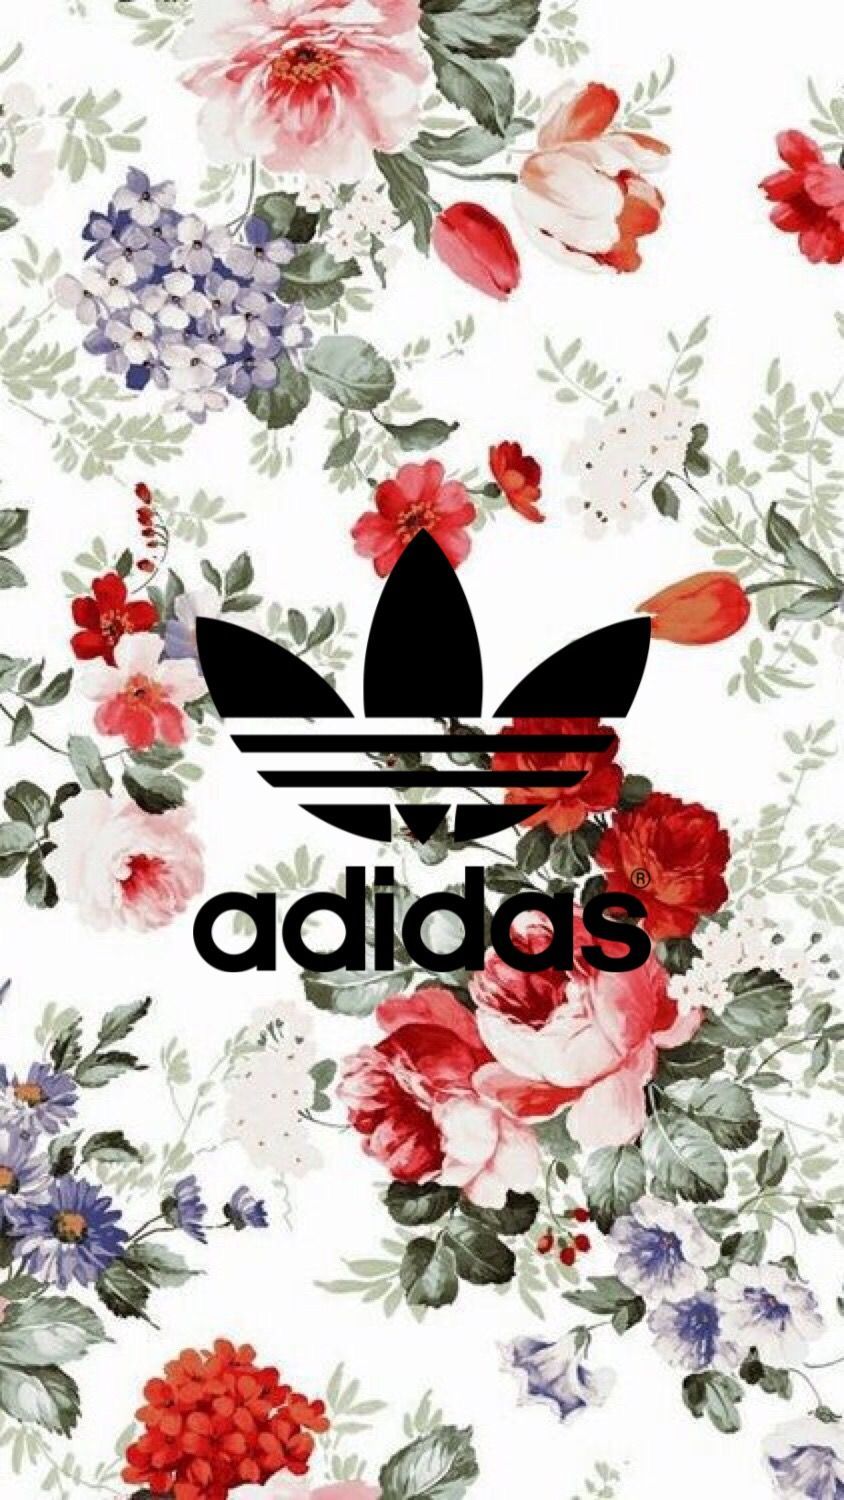 Hình ảnh Adidas và hoa